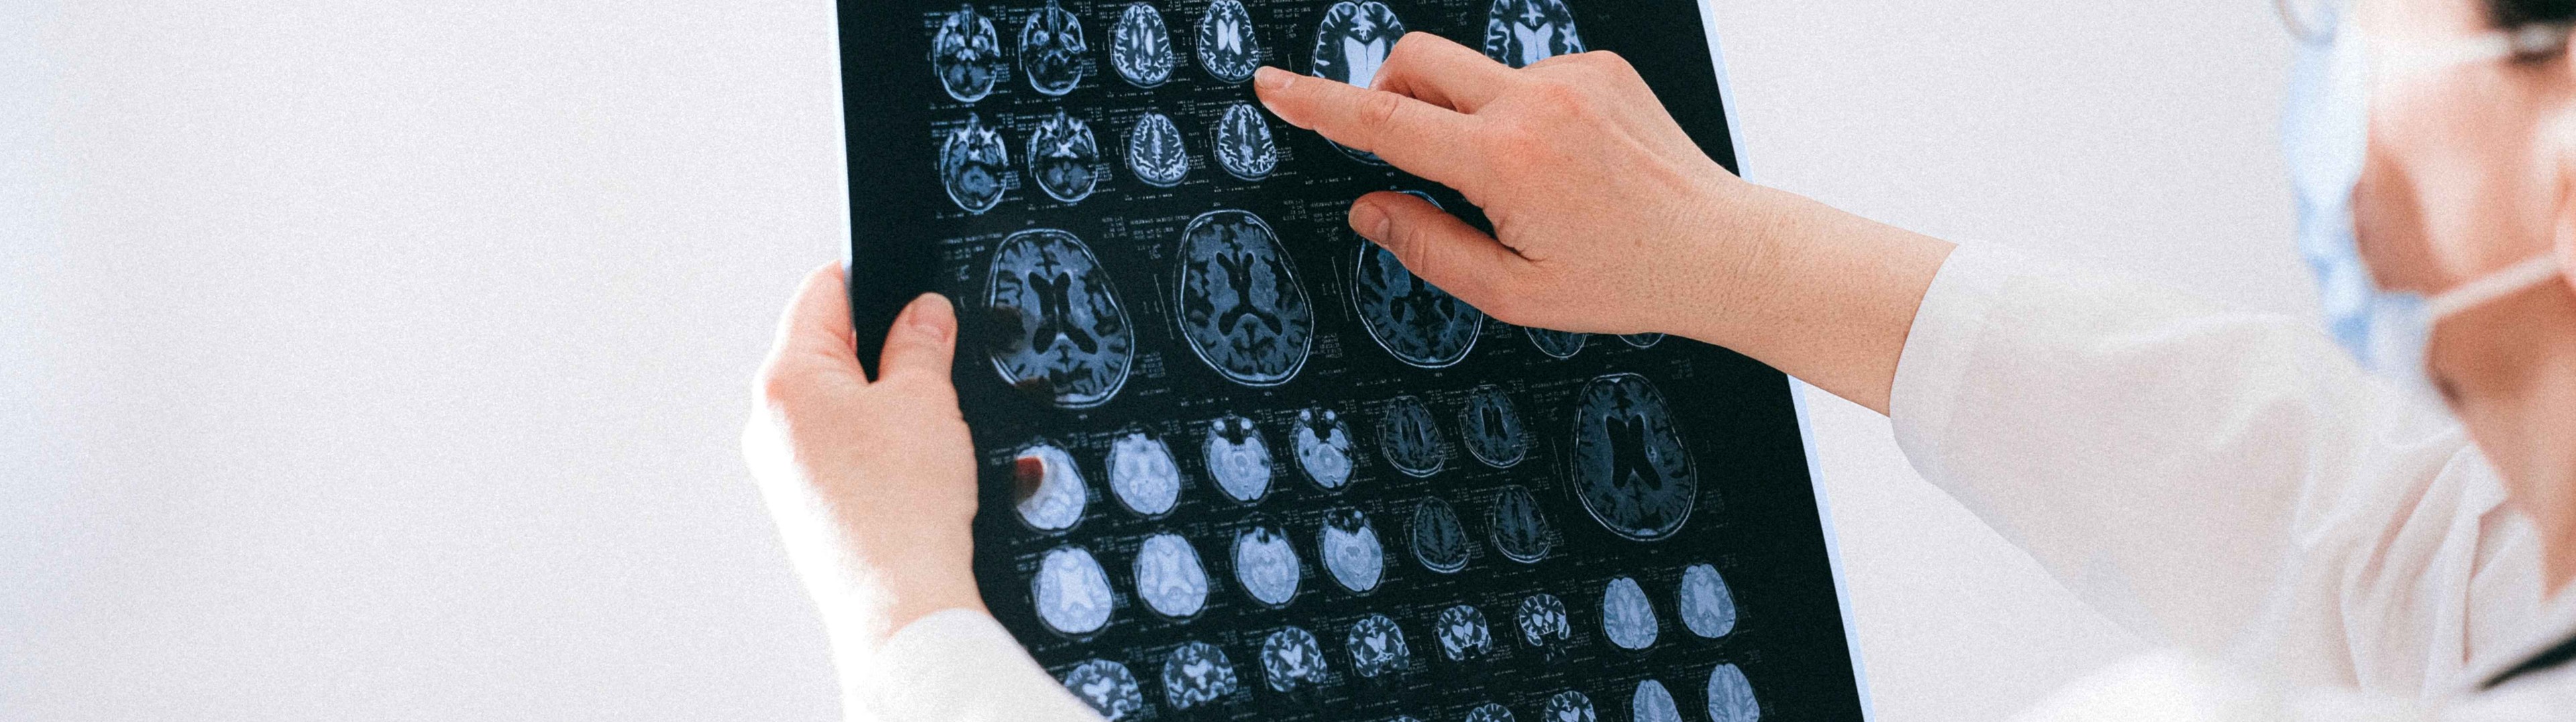 Más cerca de ralentizar el deterioro cerebral en la Enfermedad de Alzheimer